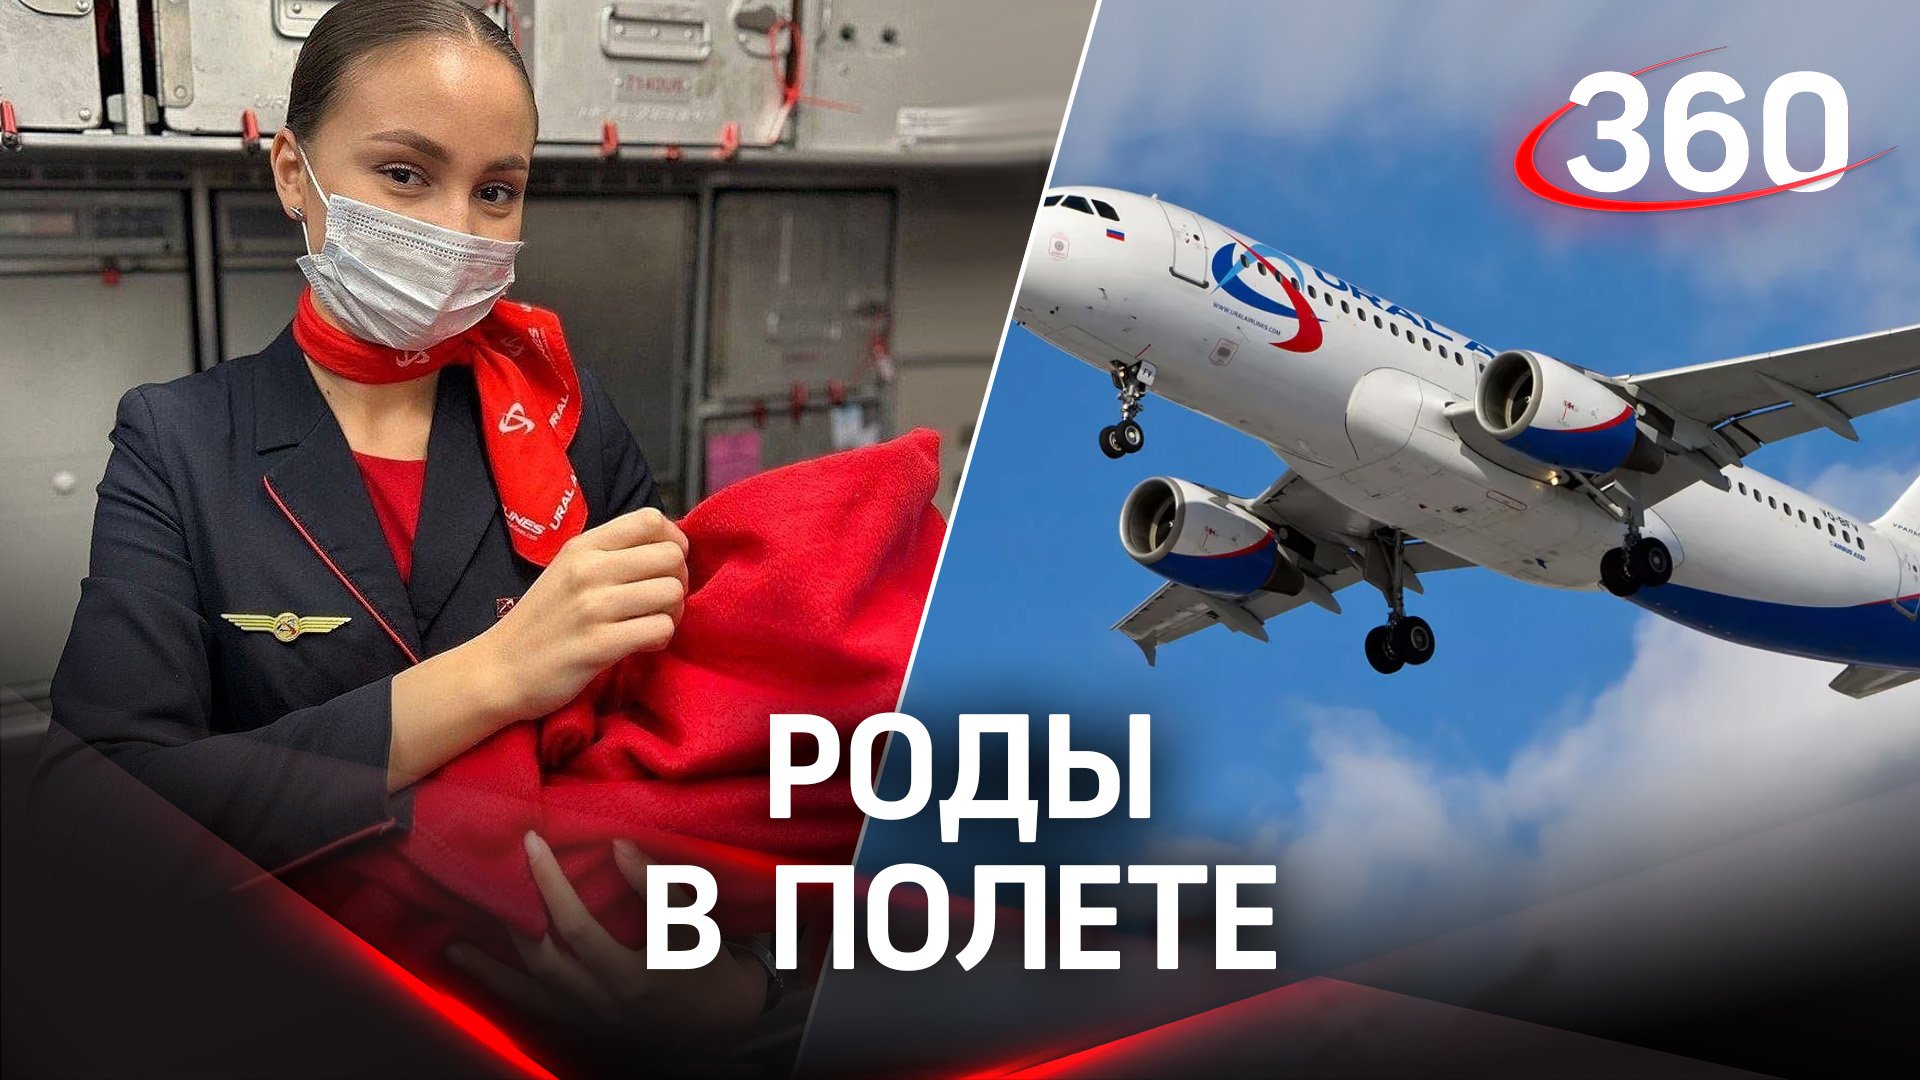 Роды в небе: на борту «Уральских авиалиний» на свет появилась девочка